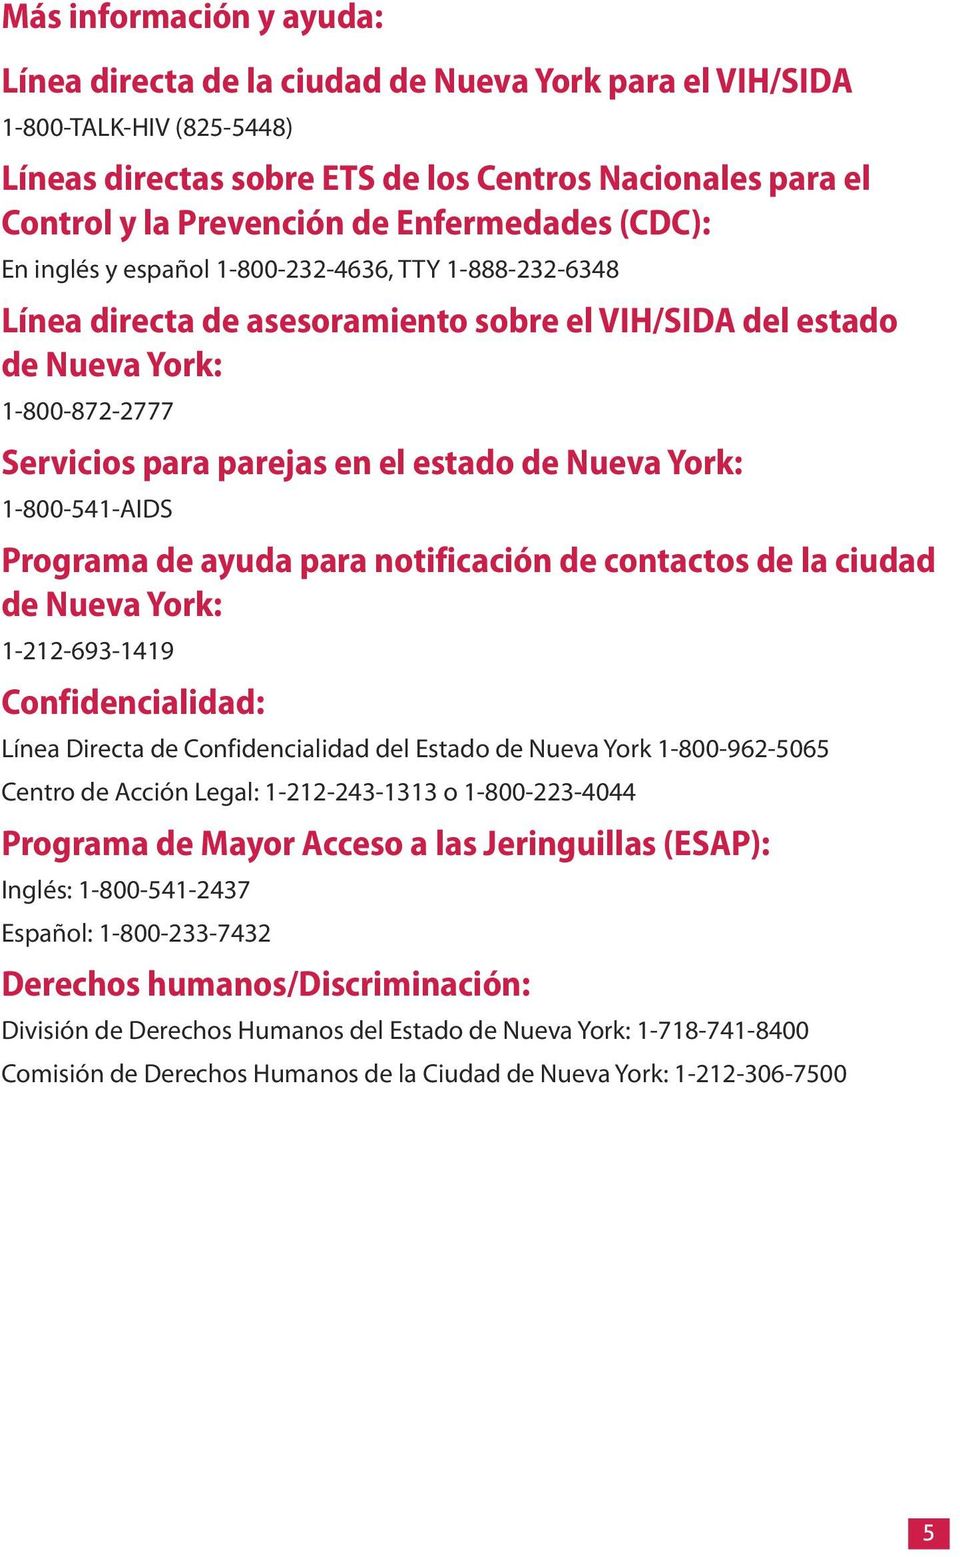 estado de Nueva York: 1-800-541-AIDS Programa de ayuda para notificación de contactos de la ciudad de Nueva York: 1-212-693-1419 Confidencialidad: Línea Directa de Confidencialidad del Estado de